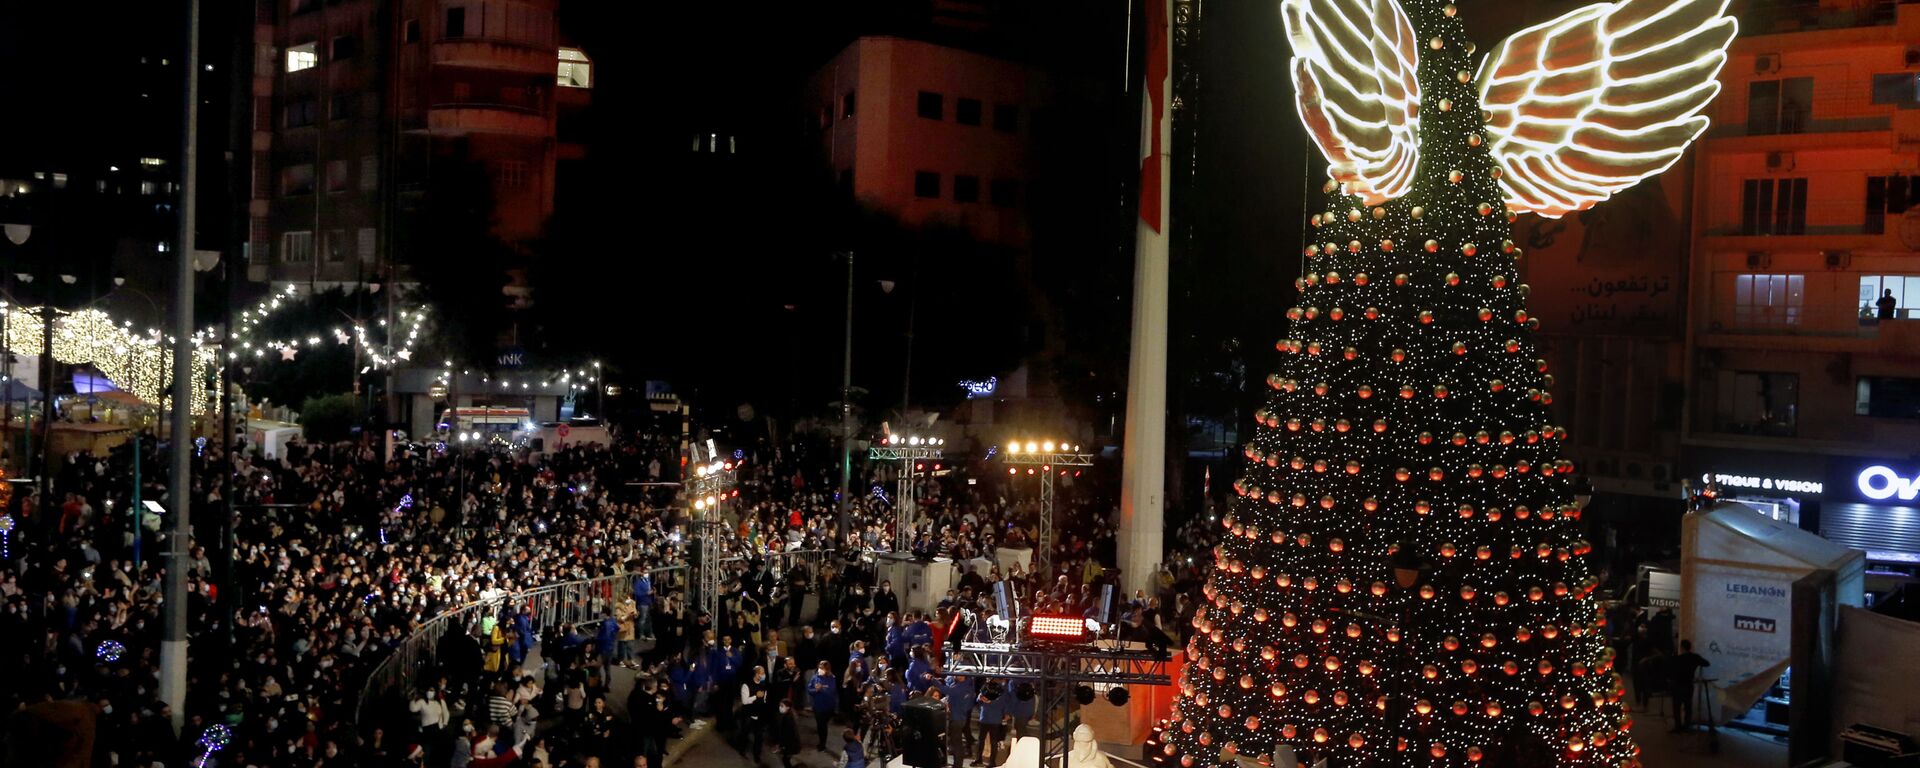 تجمع الناس أثناء إضاءة شجرة عيد الميلاد العملاقة عند انطلاق احتفالات عيد الميلاد في ساحة ساسين في منطقة الأشرفية في بيروت، لبنان، 7  ديسمبر 2021. - سبوتنيك عربي, 1920, 29.12.2021